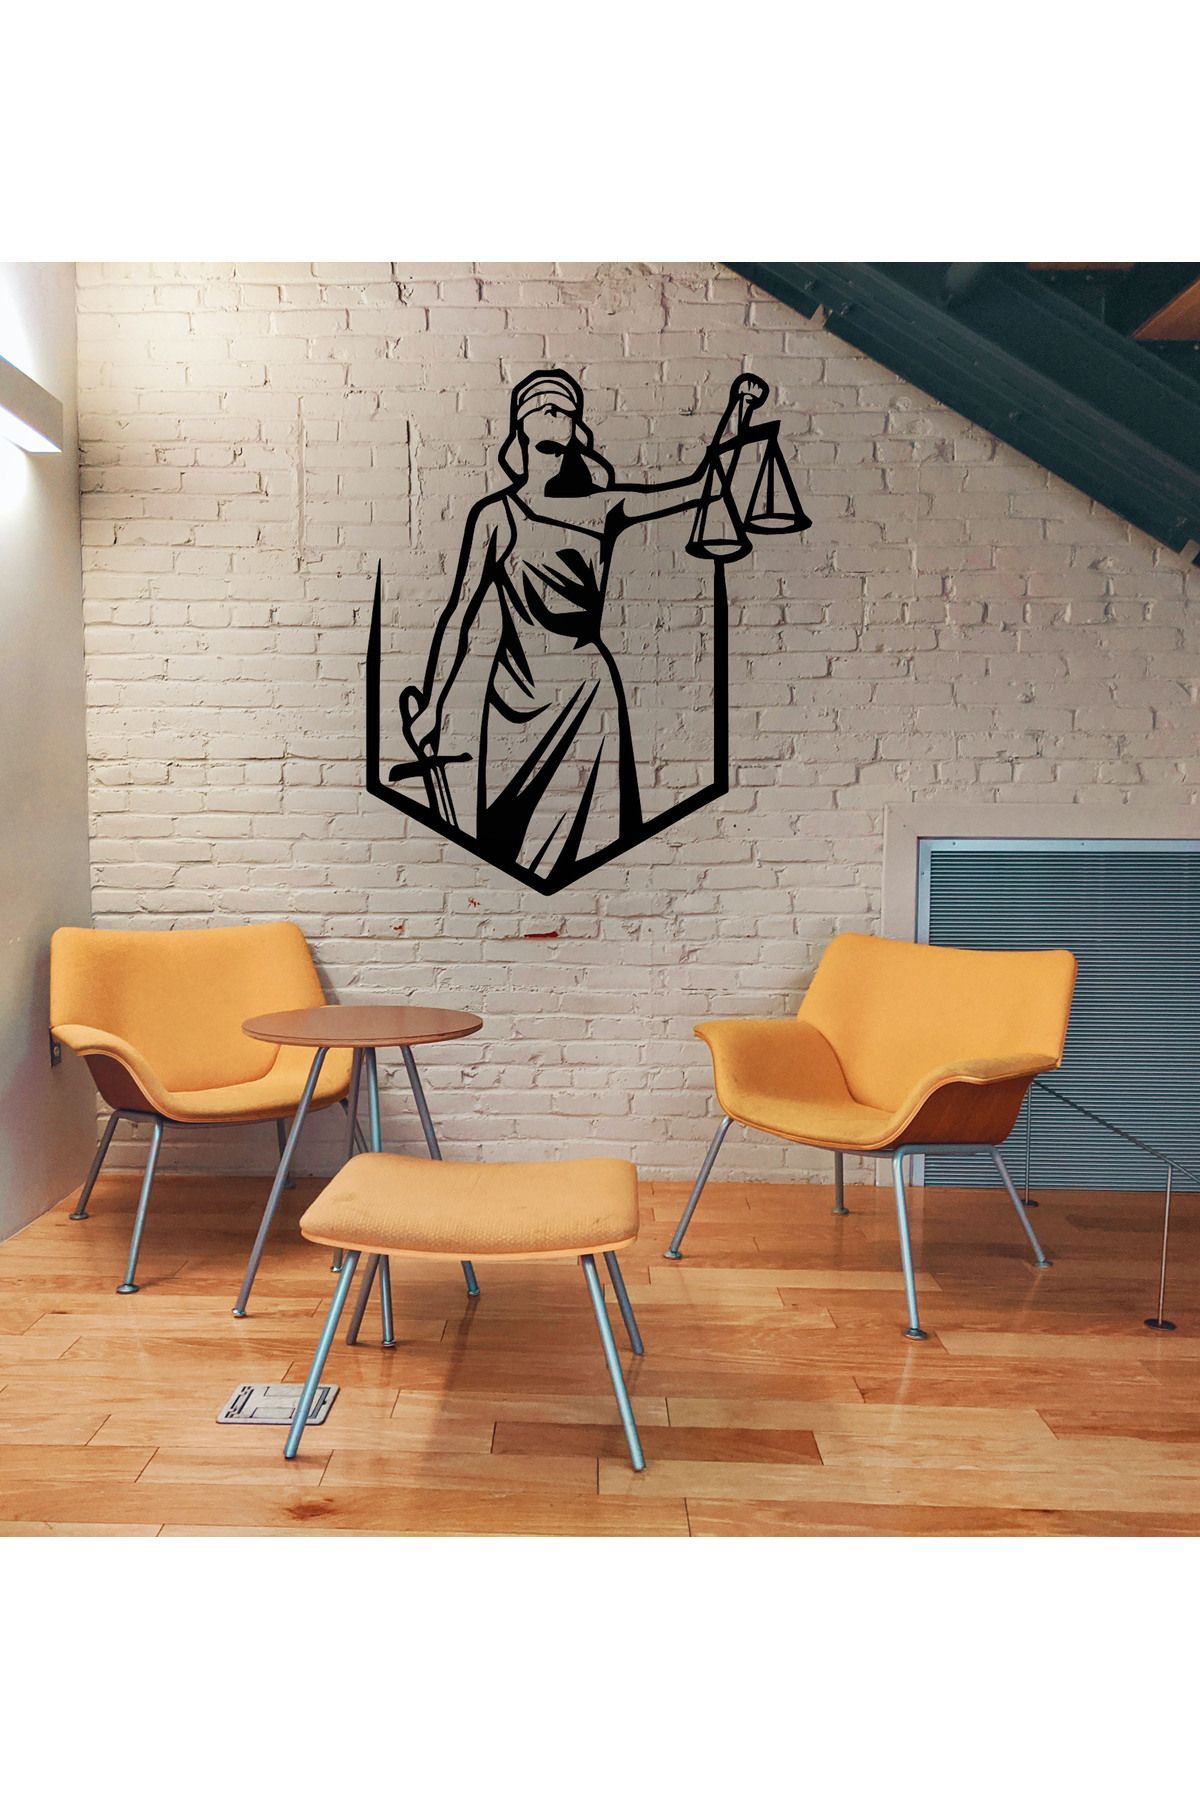 VELUX HOME Adalet Terazisi Themis Metal Duvar Tablosu Hediyelik Hukuk Bürosu Avukat Dekorasyon Ofis Dekoru